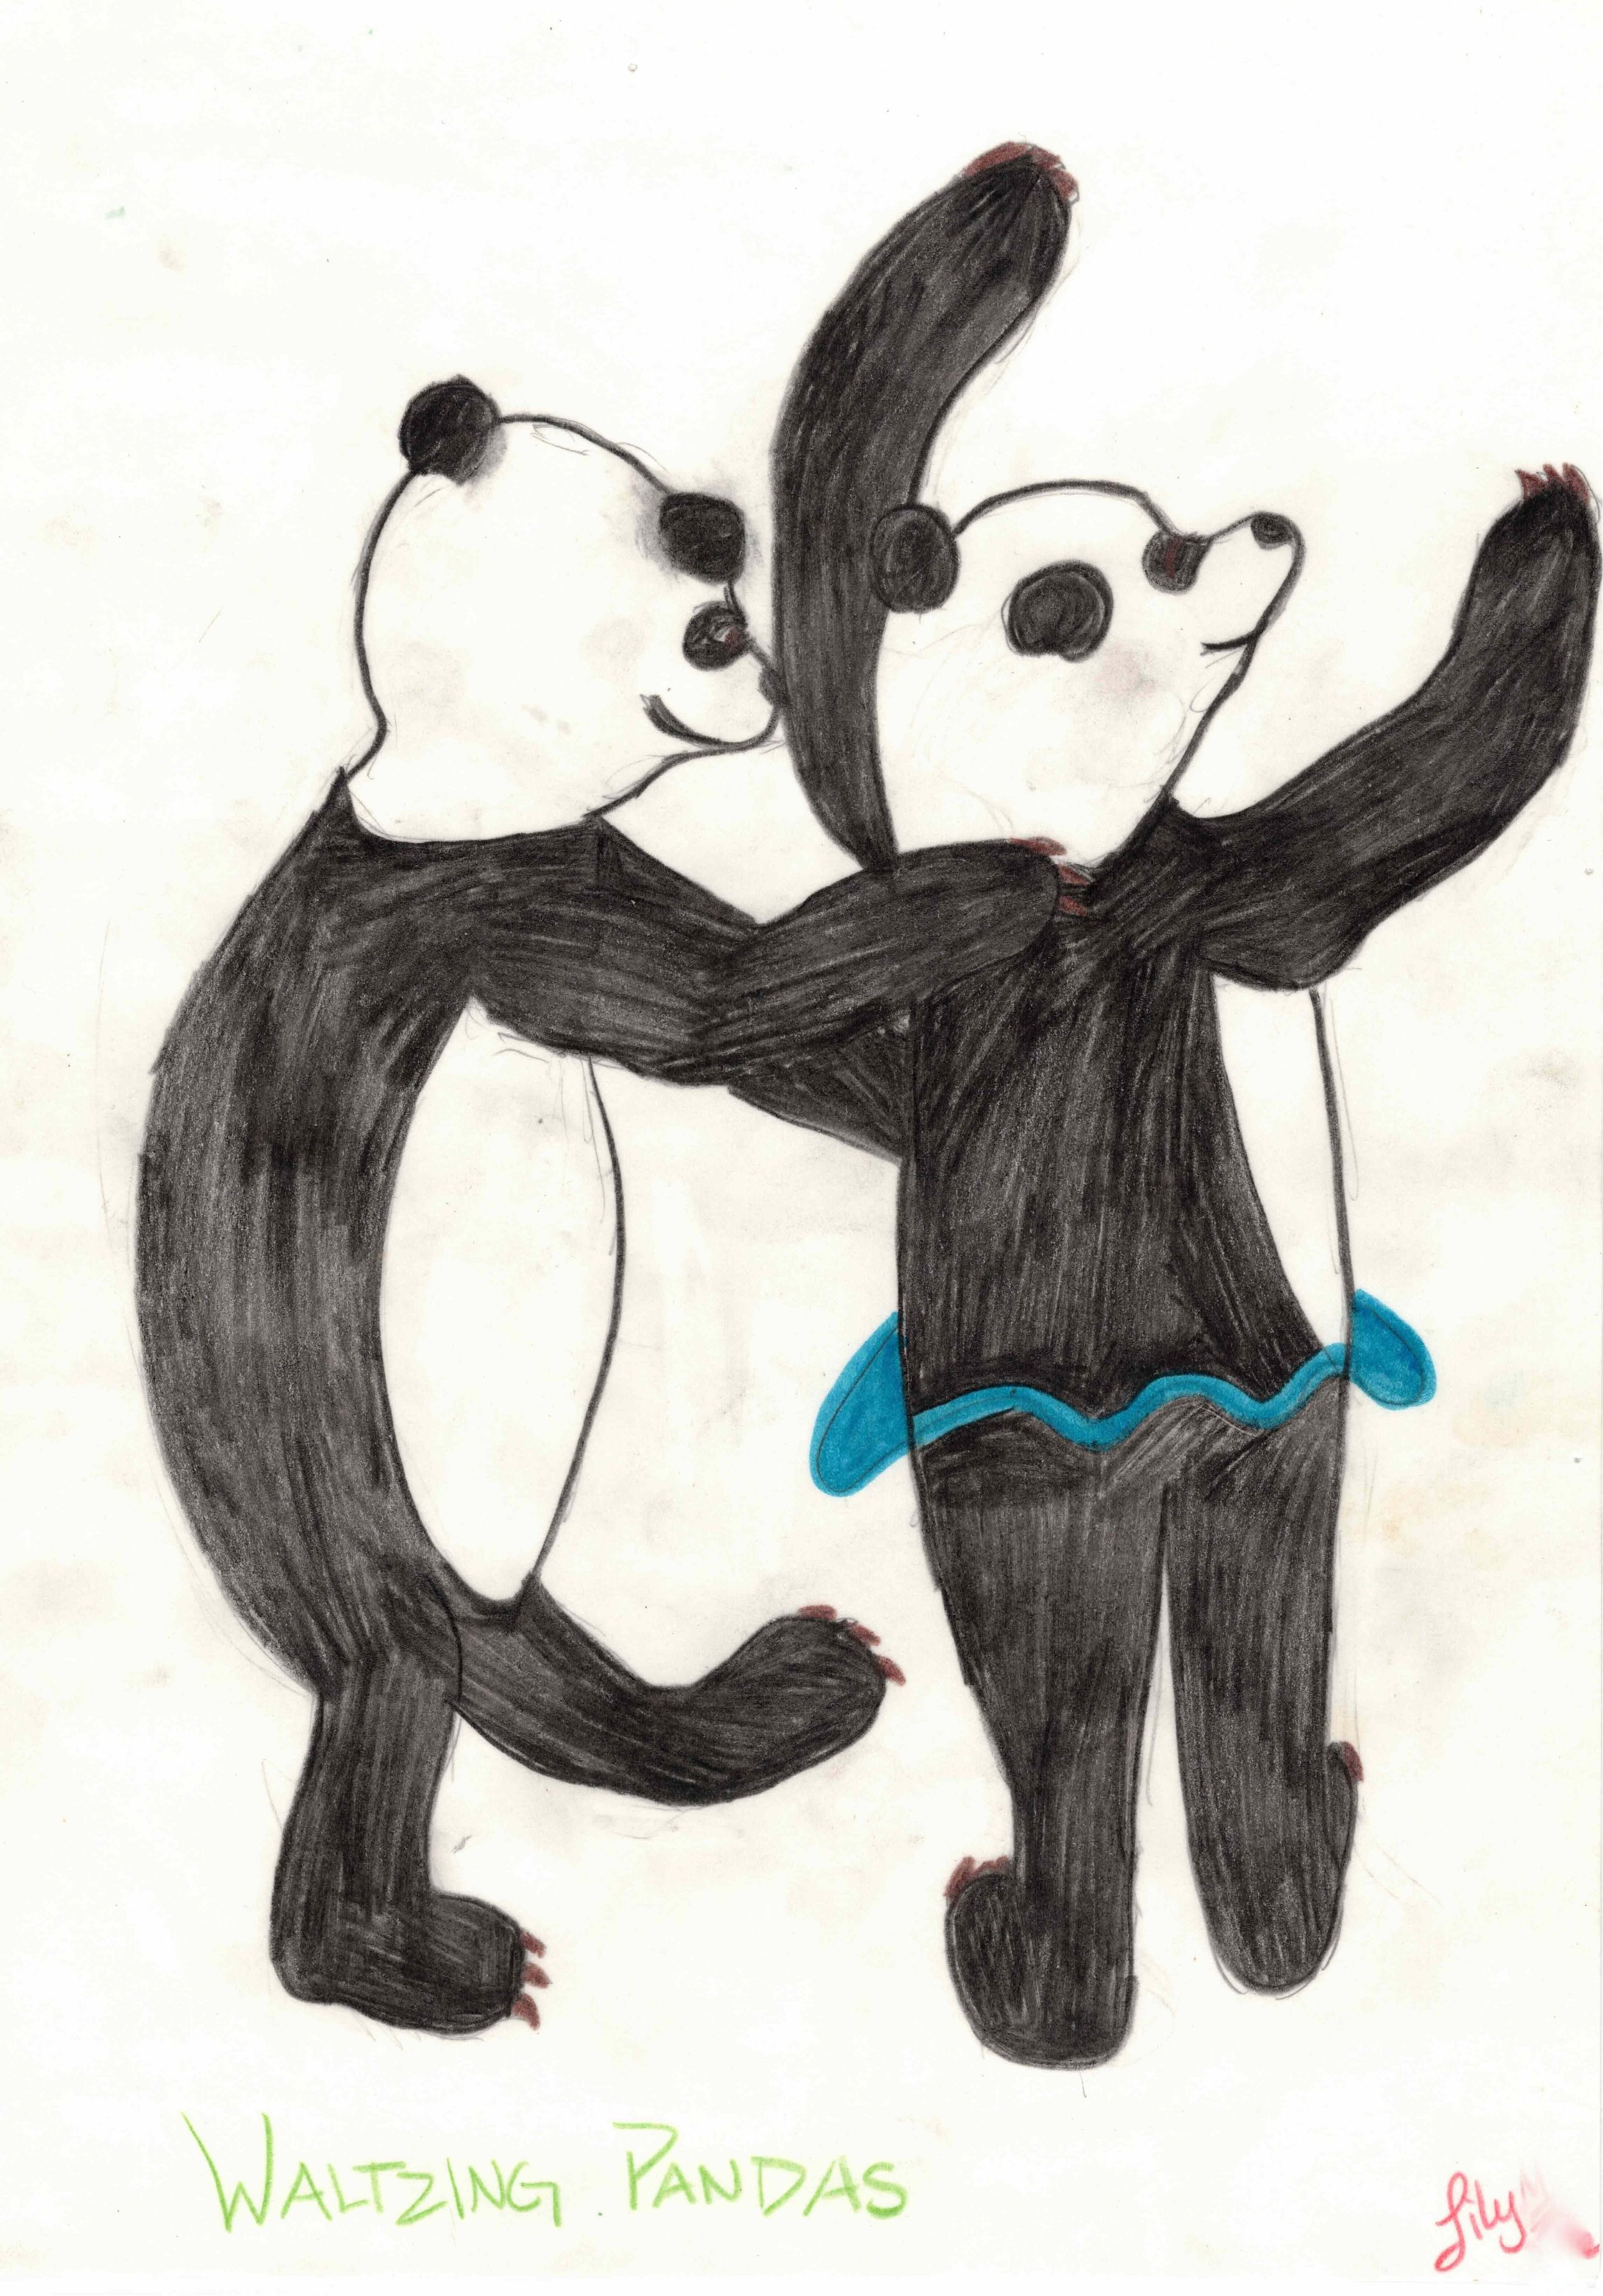 Waltzing Pandas